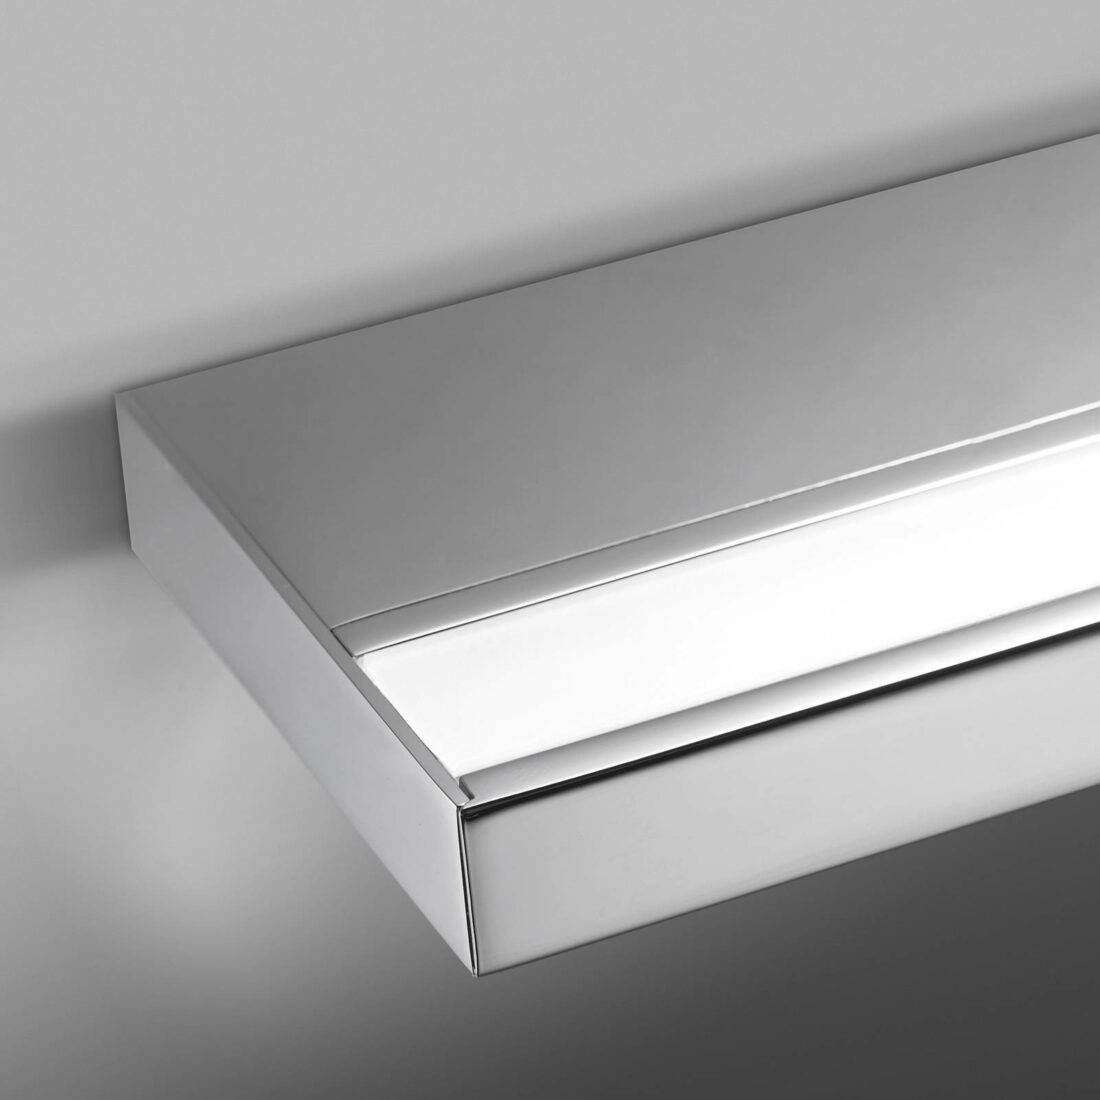 Pujol Iluminación LED nástěnné světlo koupelny Prim IP20 90 cm chrom